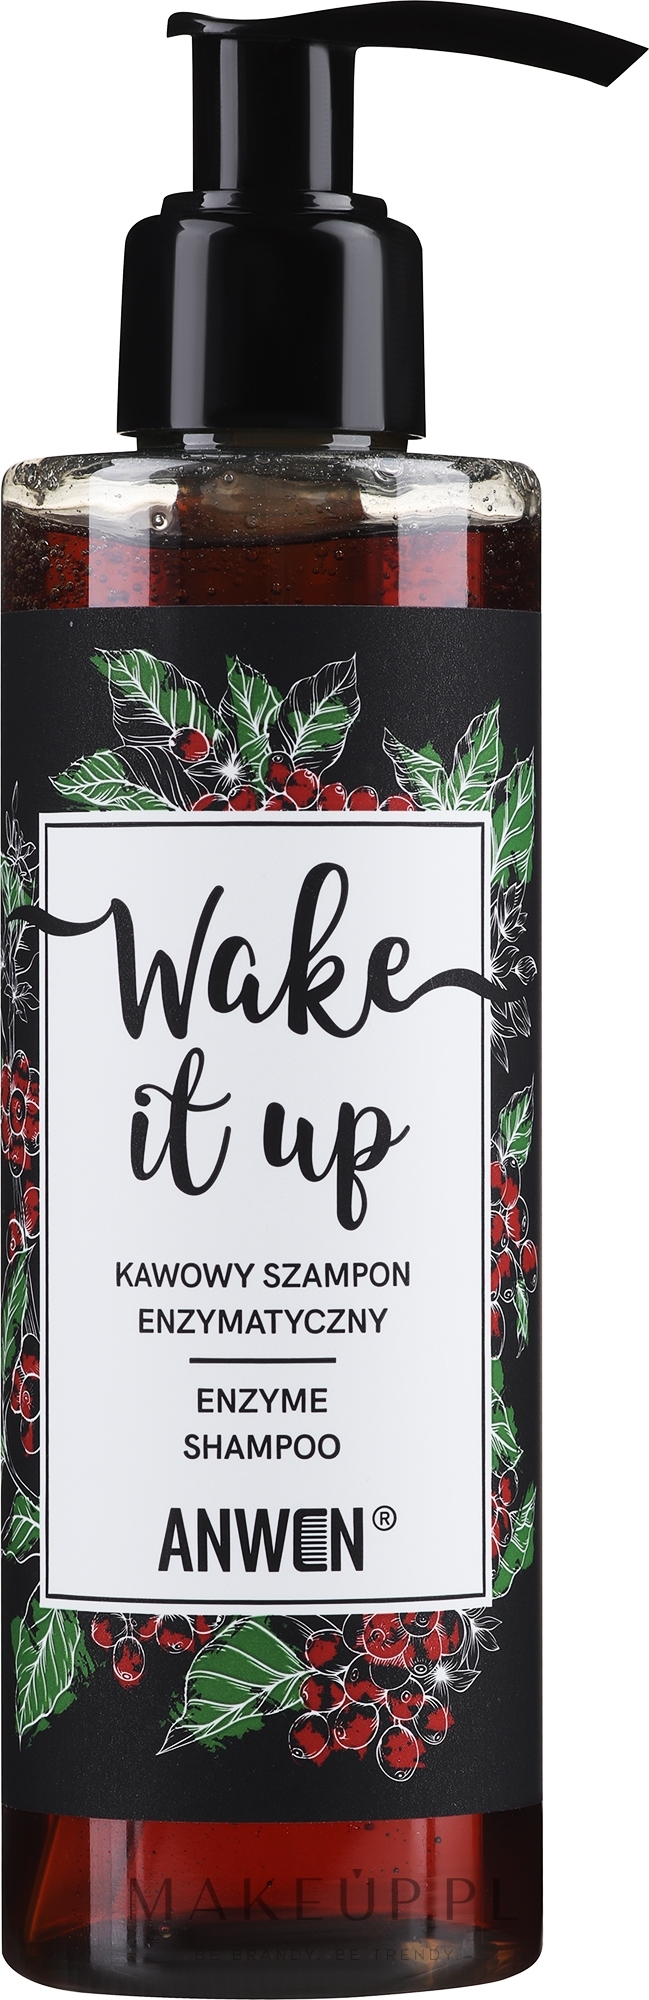 wake it up enzymatyczny szampon kawowy wizaz